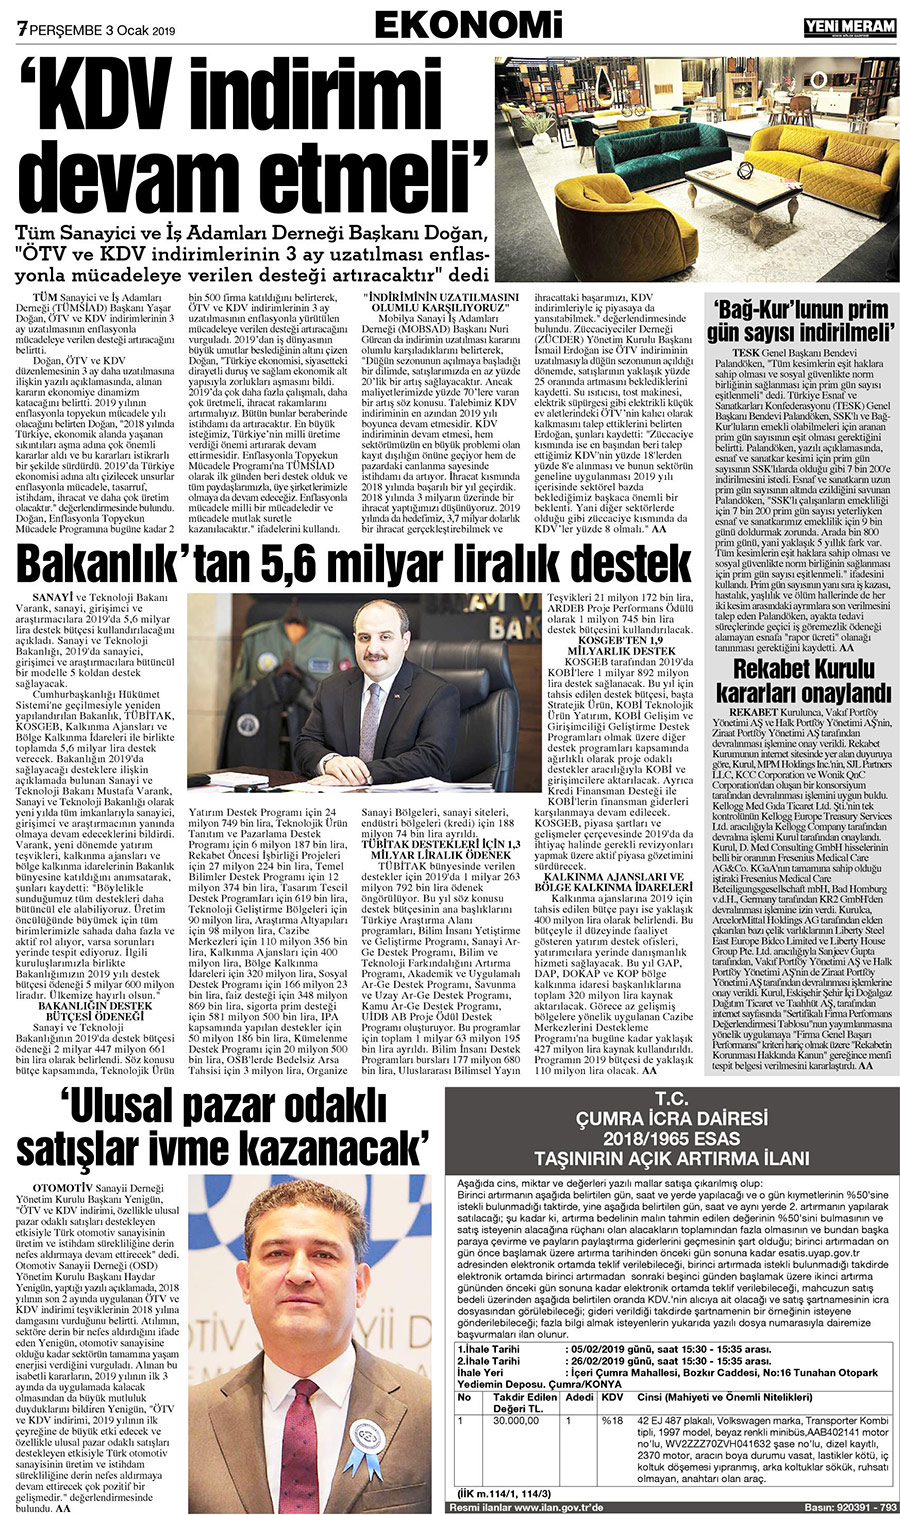 3 Ocak 2019 Yeni Meram Gazetesi